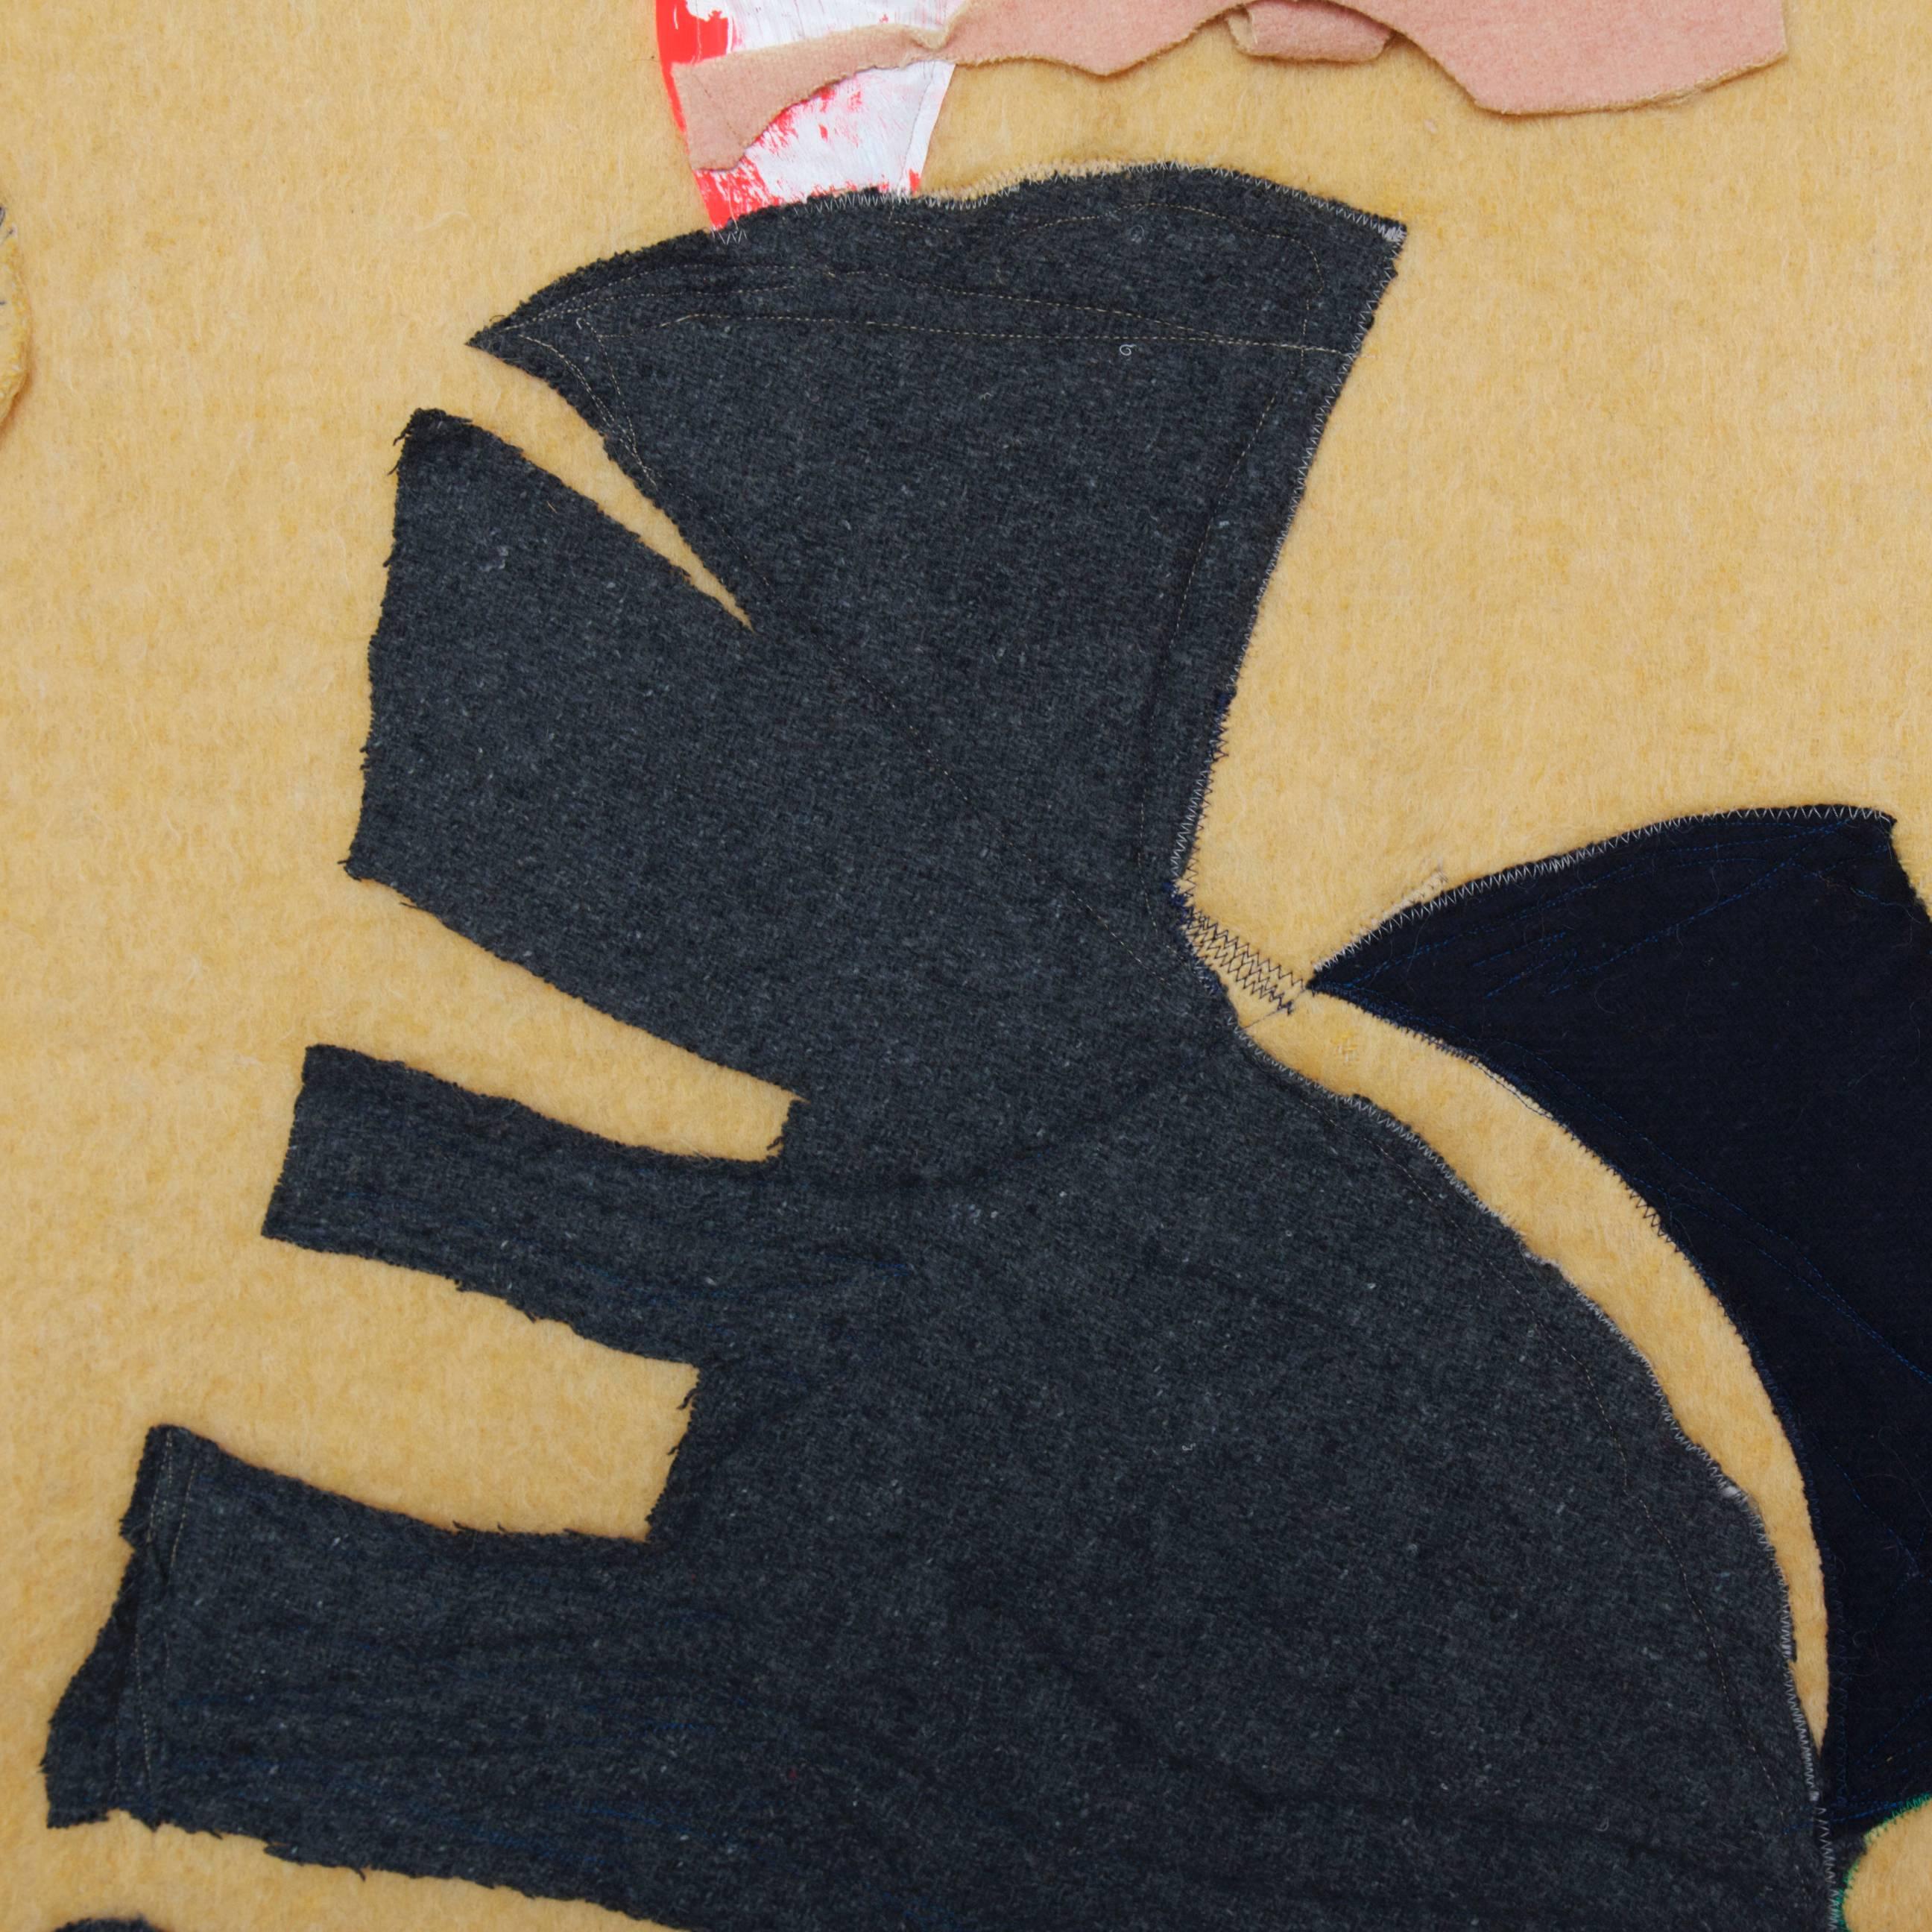 Réalisé en 2009 par Naomi Clark

Couverture en laine avec peinture et appliqué

Les tableaux en patchwork de Naomi Clark sont réalisés à partir de couvertures de camp vintage récupérées sur EBay, dans des marchés aux puces et des ventes de garage.